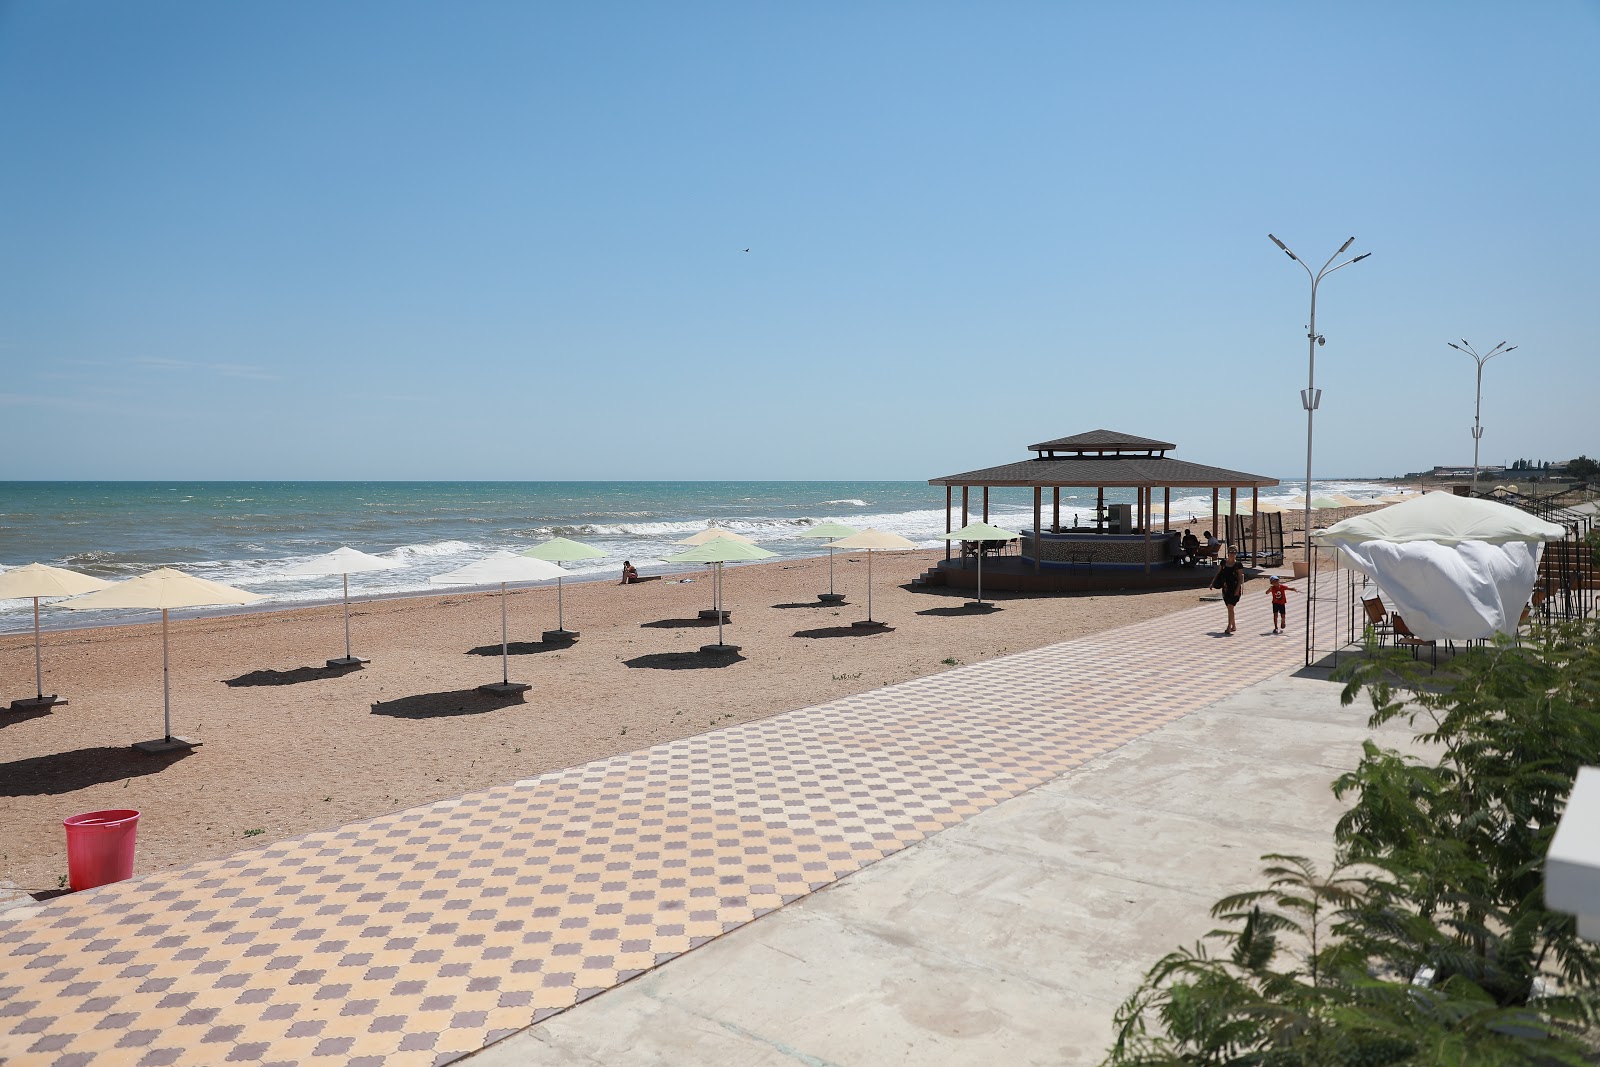 Palmira Plazh'in fotoğrafı çok temiz temizlik seviyesi ile